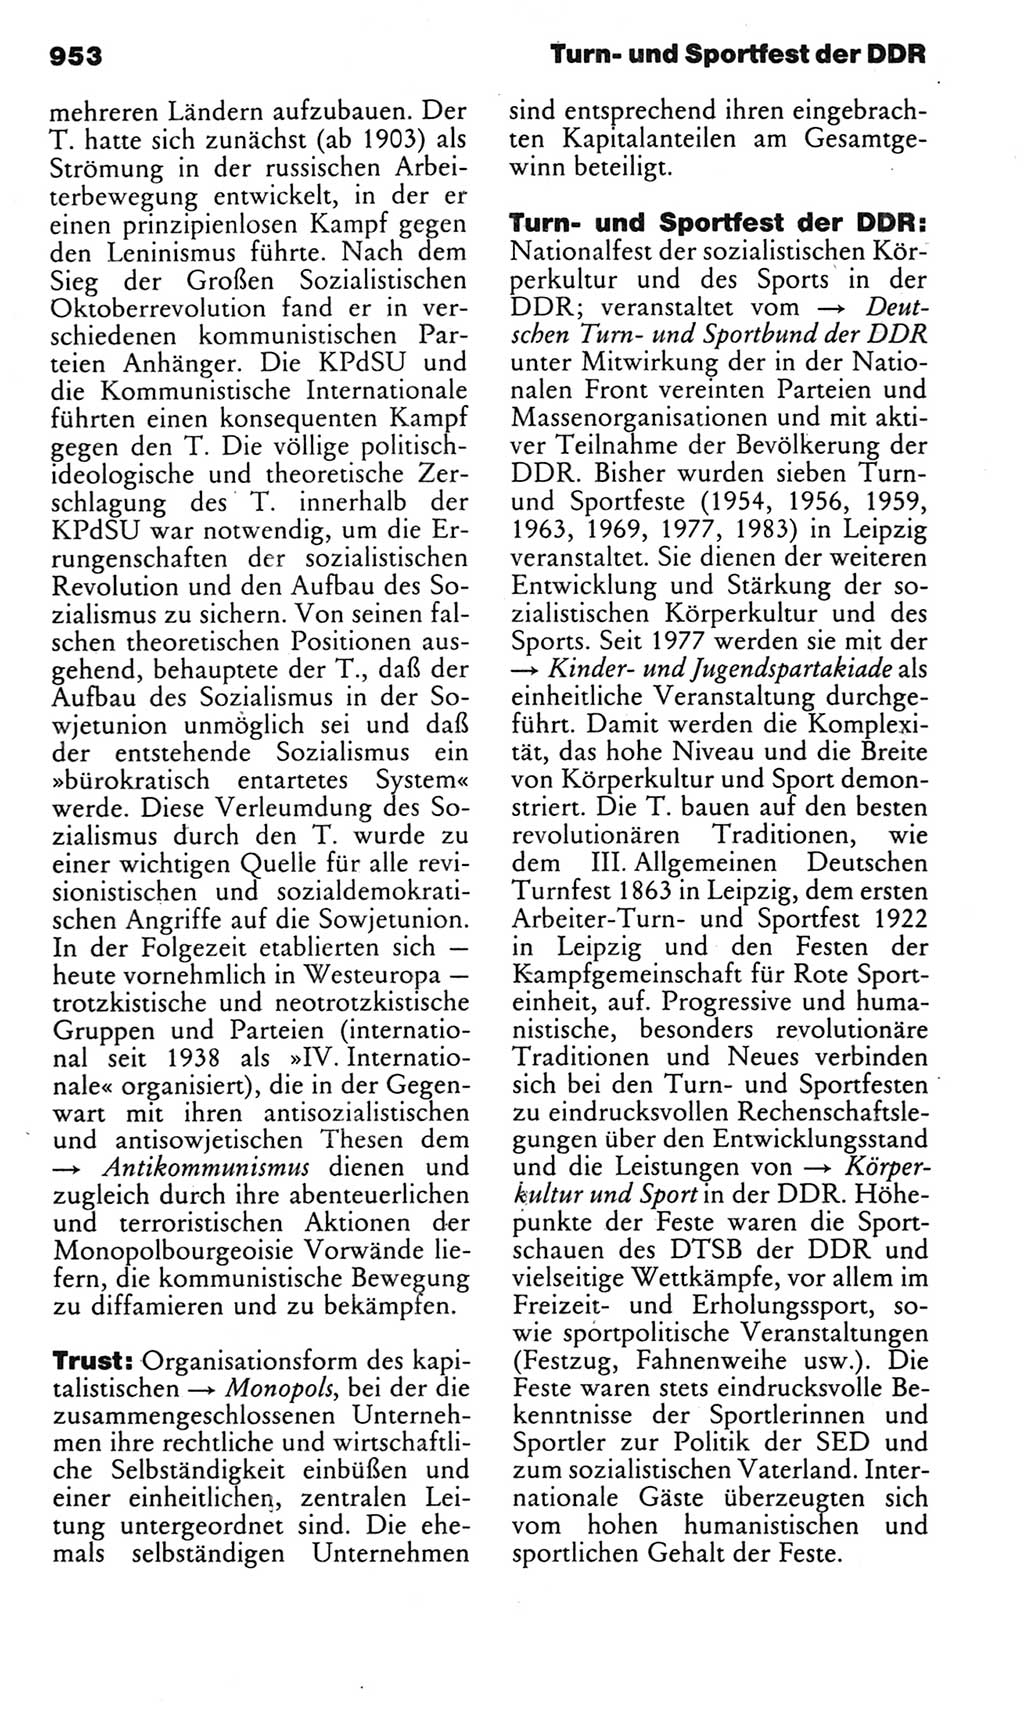 Kleines politisches Wörterbuch [Deutsche Demokratische Republik (DDR)] 1983, Seite 953 (Kl. pol. Wb. DDR 1983, S. 953)